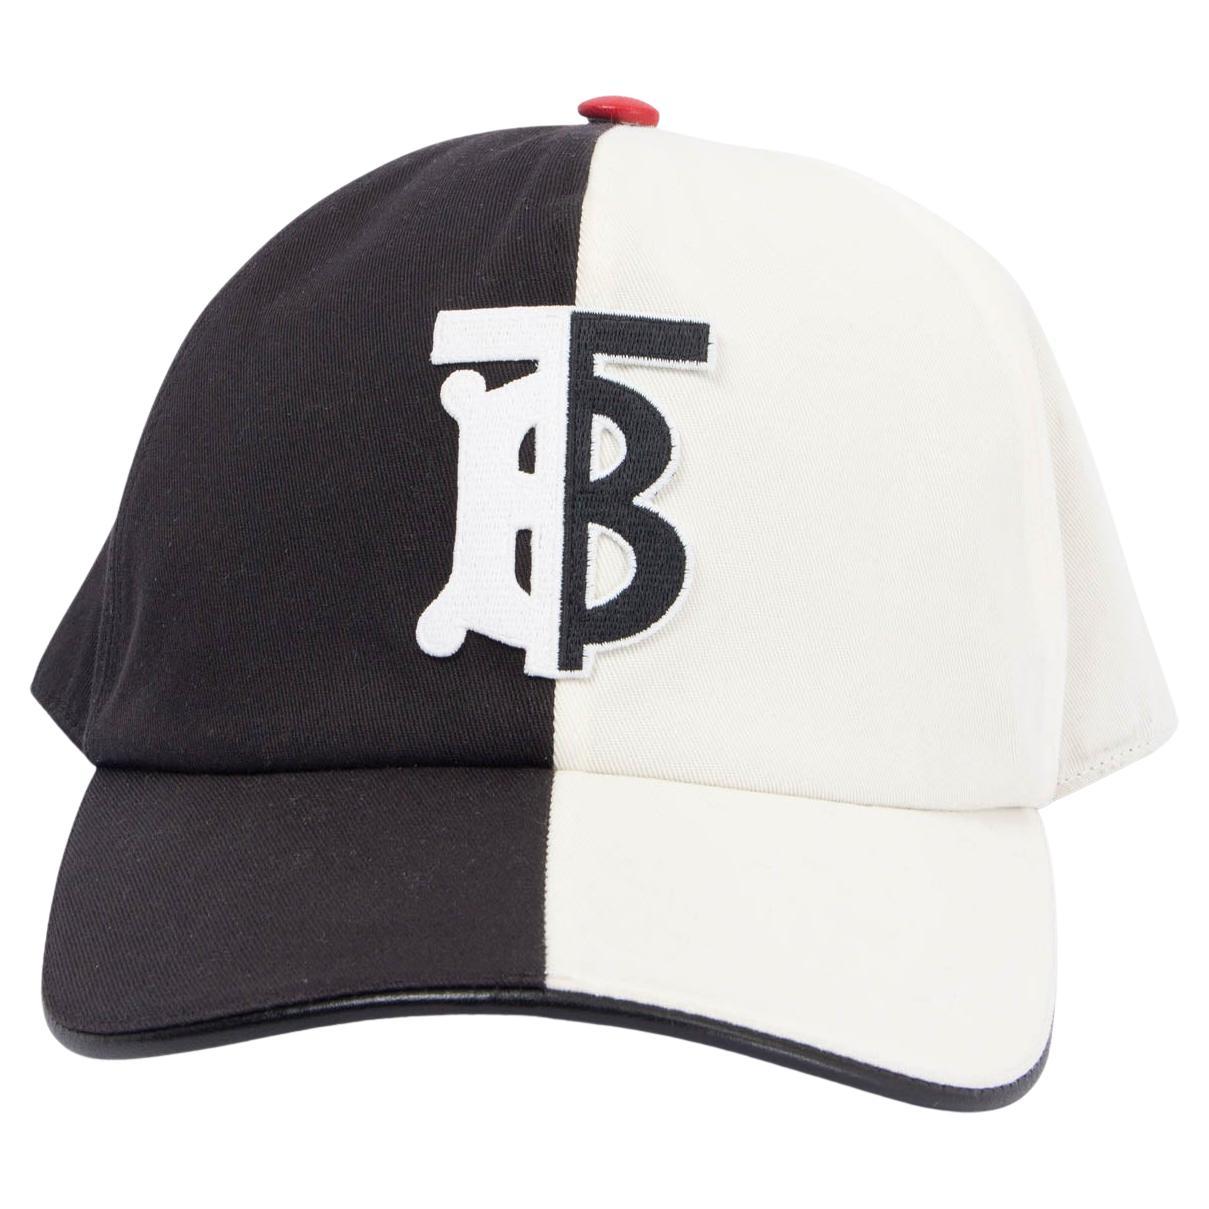 Chapeau de baseball BURBERRY en coton noir et blanc avec logo MONOGRAM, taille S